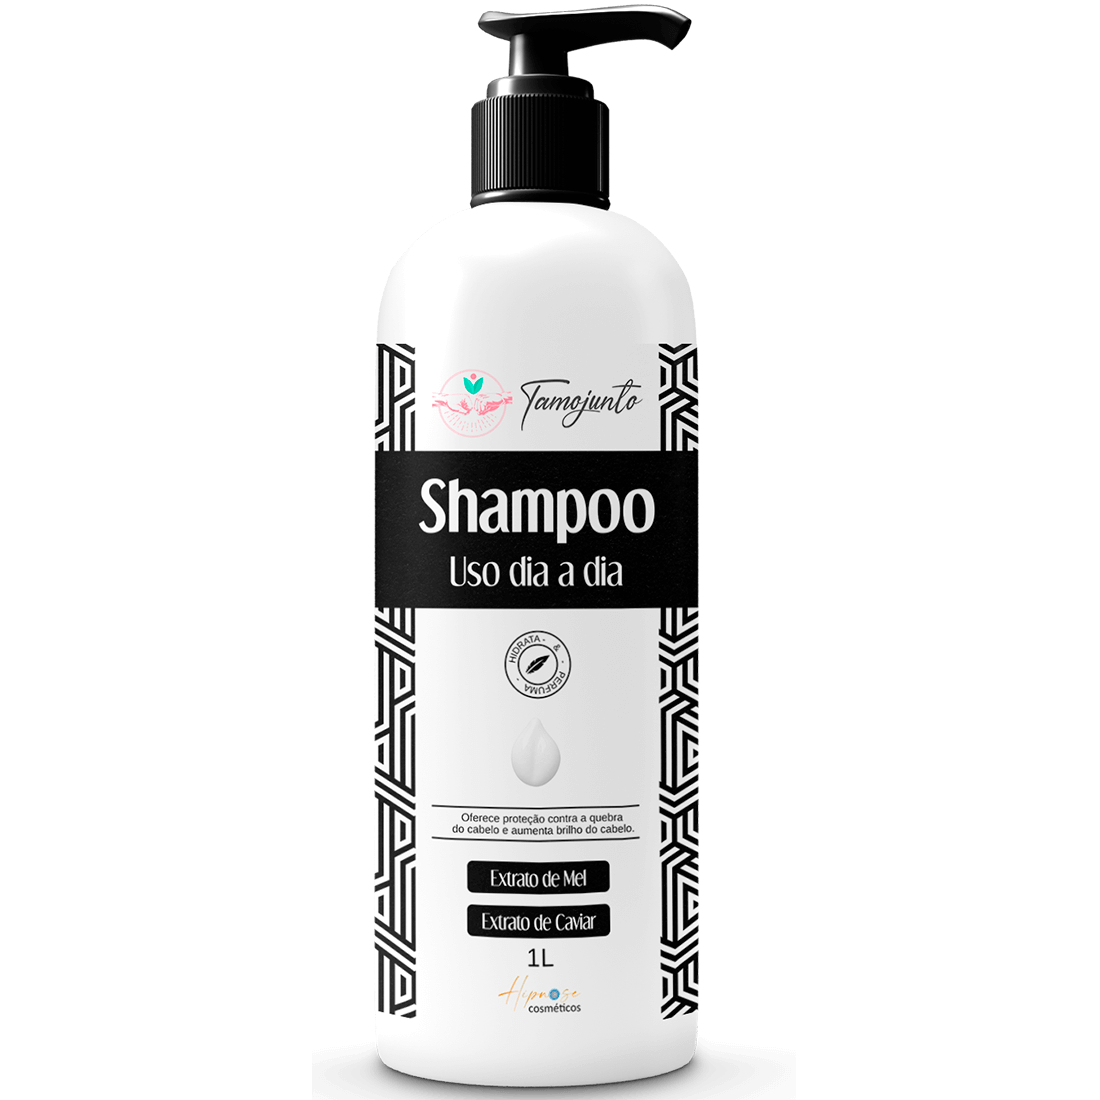 Shampoo Dia a Dia Mockup - final - NOVOS FINAIS (1)